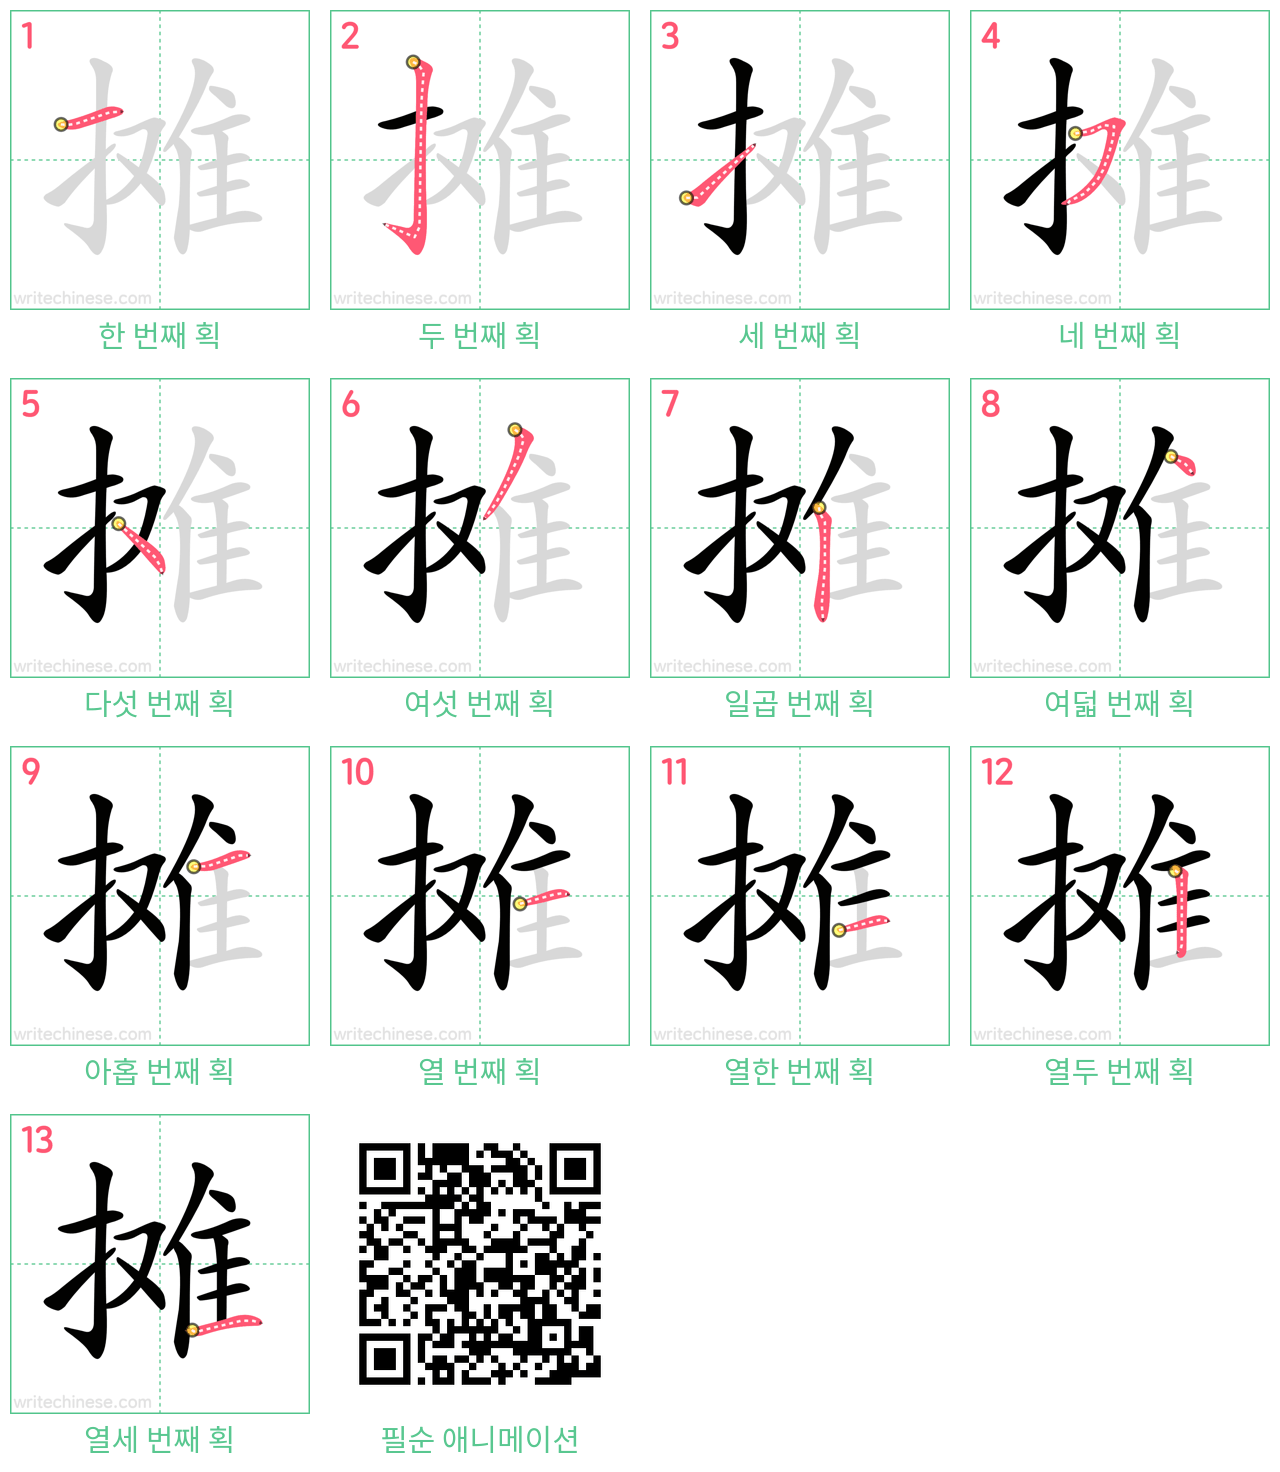 摊 step-by-step stroke order diagrams